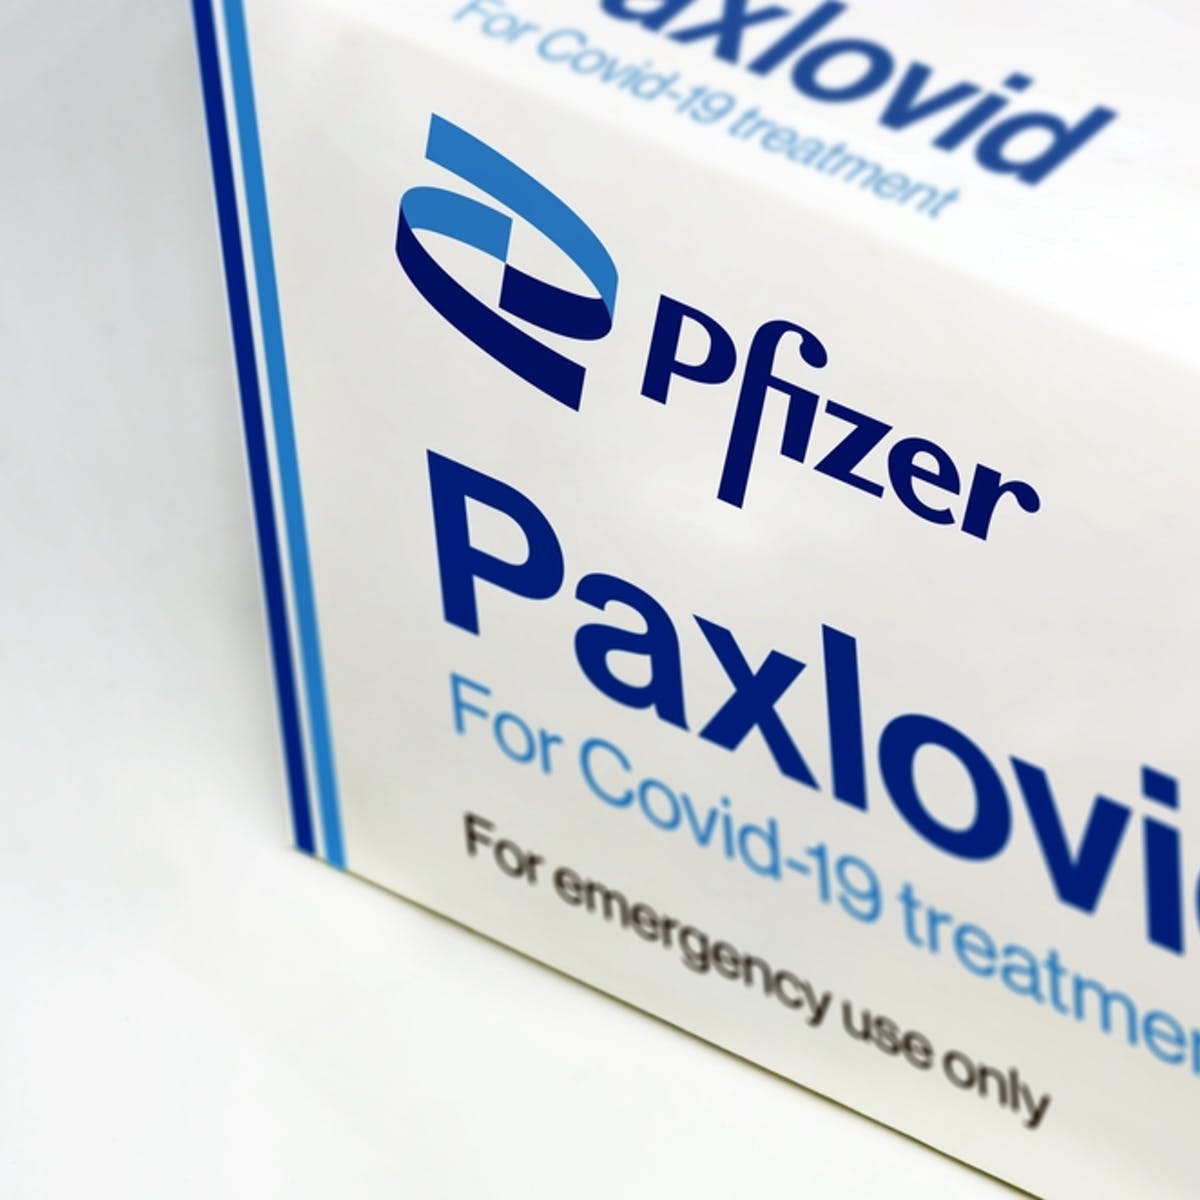 FDA ਨੇ COVID-19 ਦੇ ਇਲਾਜ ਲਈ ਨਵੀਂ Pfizer ਗੋਲੀ ਨੂੰ ਅਧਿਕਾਰਤ ਕੀਤਾ ਹੈ